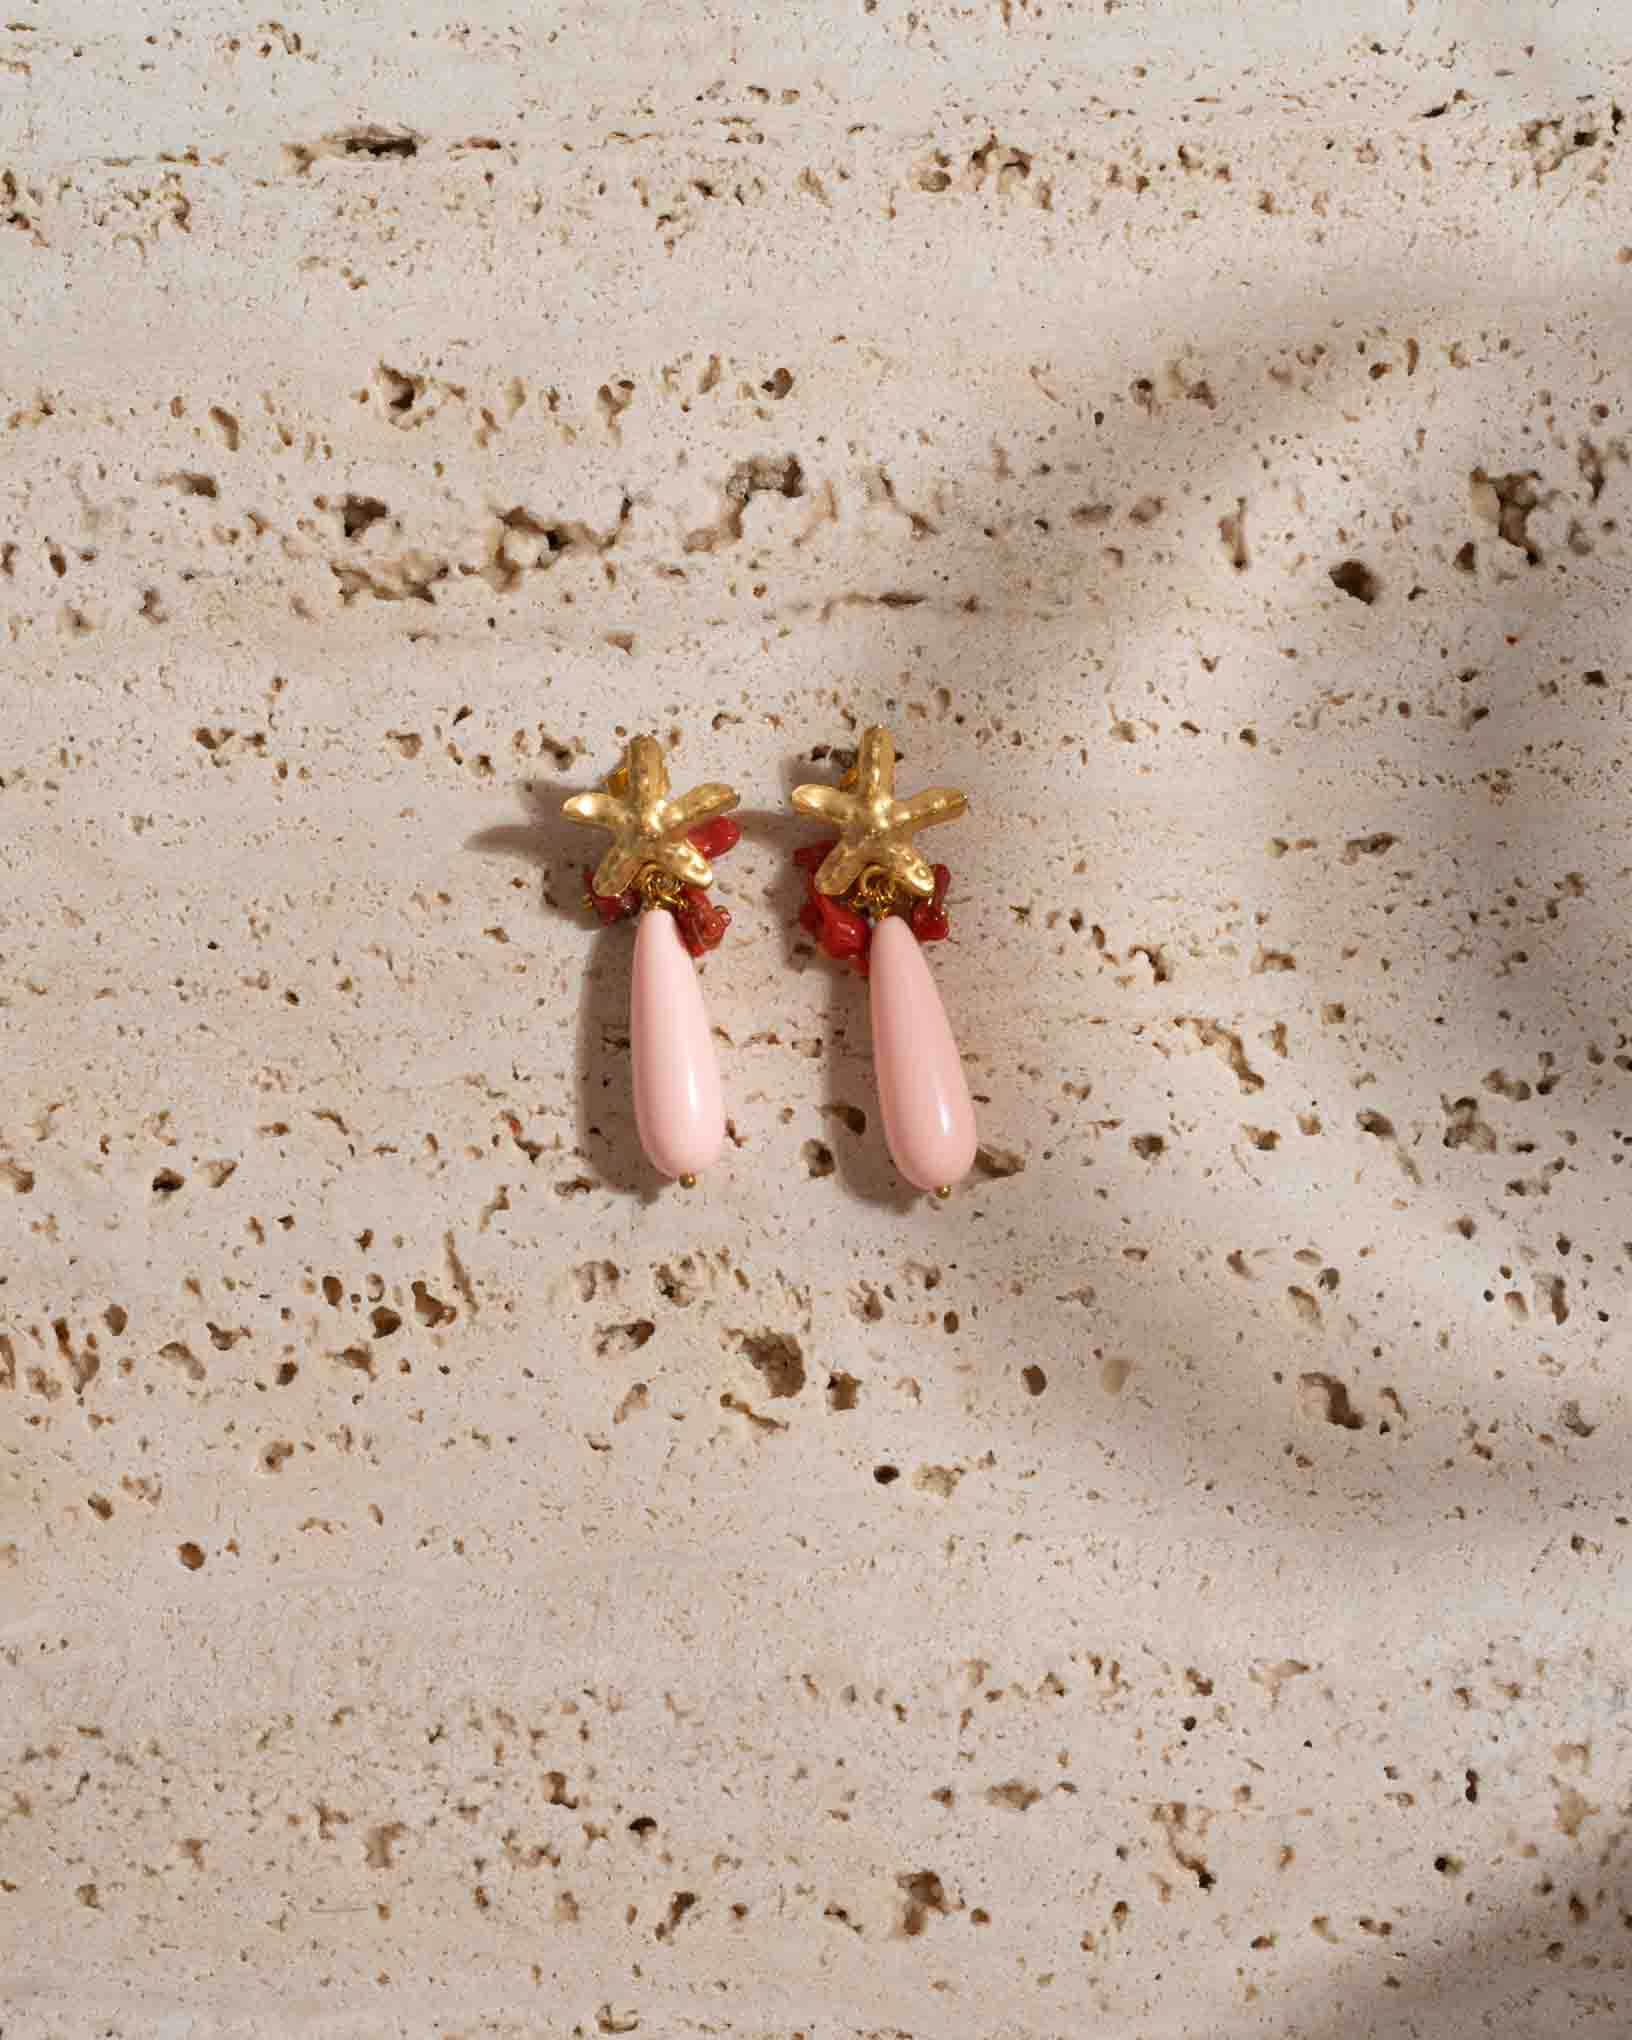 Ohrring Gauro aus der Kollektion Perle e Coralli von Donna Rachele Jewelry